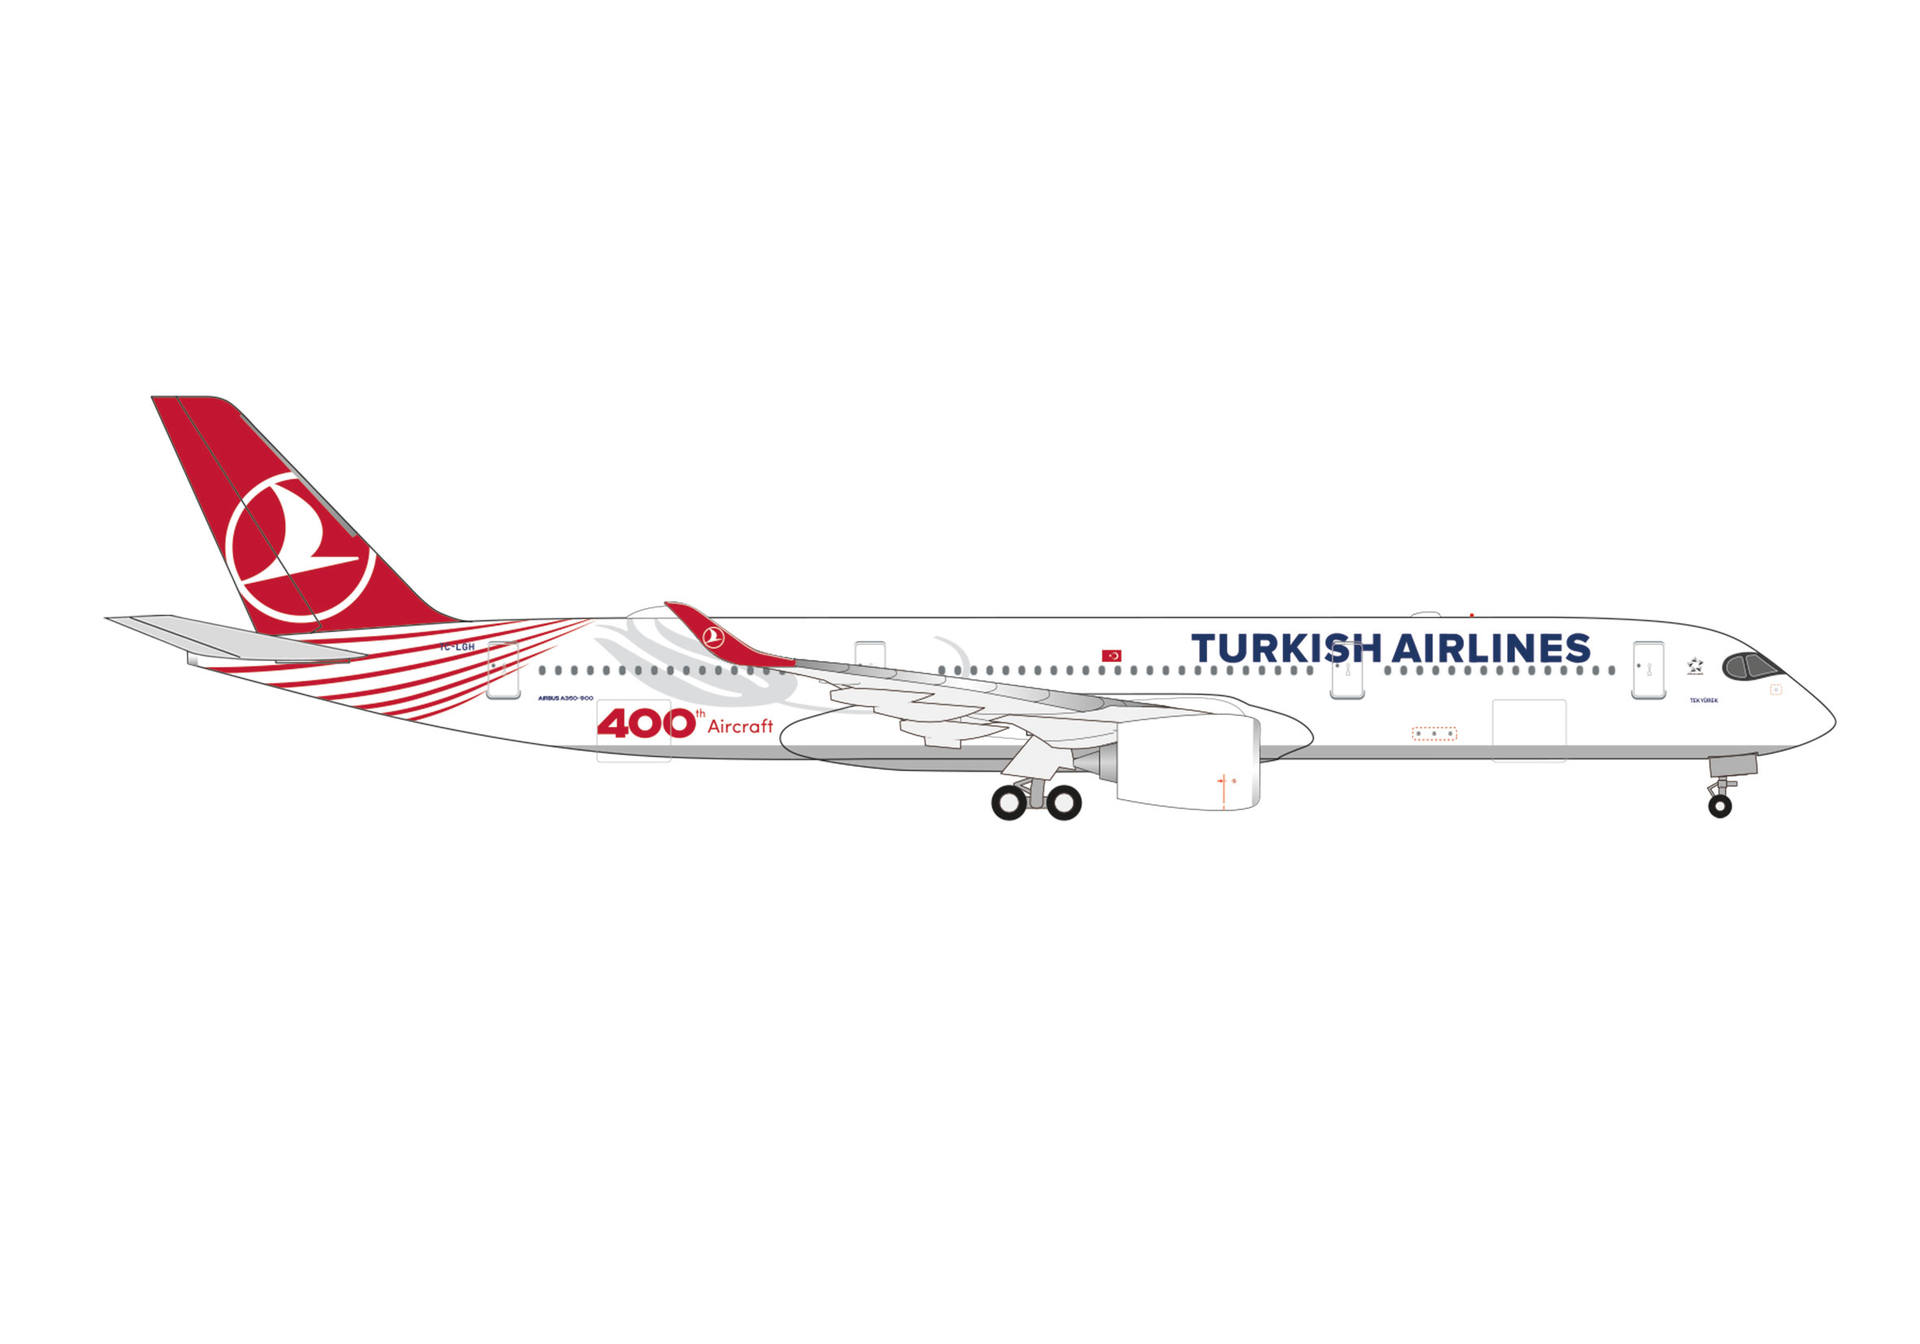 537230 Herpa Turkish Airlines / トルコ航空/ターキッシュ エアラインズ A350-900 TC-LGH 400th  Aircraft ,Tek Yürek 1:500